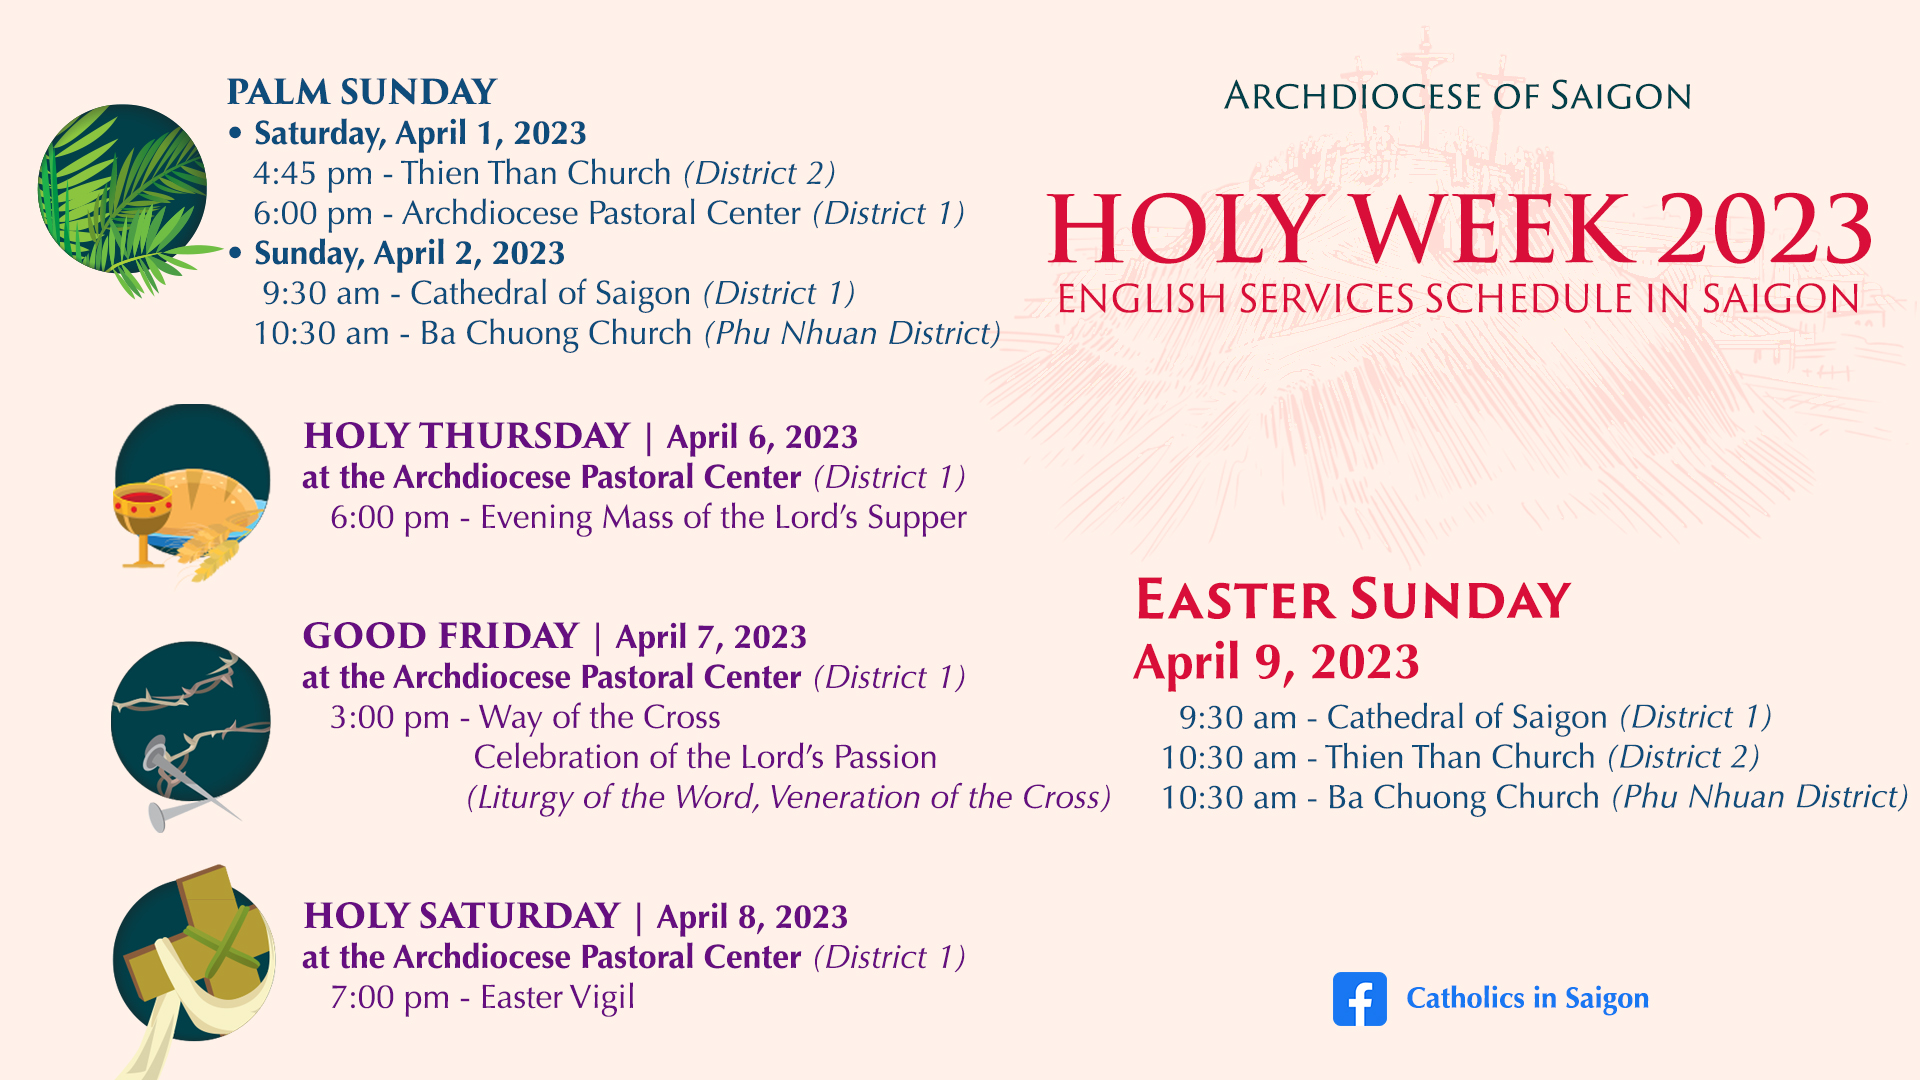 Holy Week 2023 | Horaires de la Semaine Sainte | 2023성주간